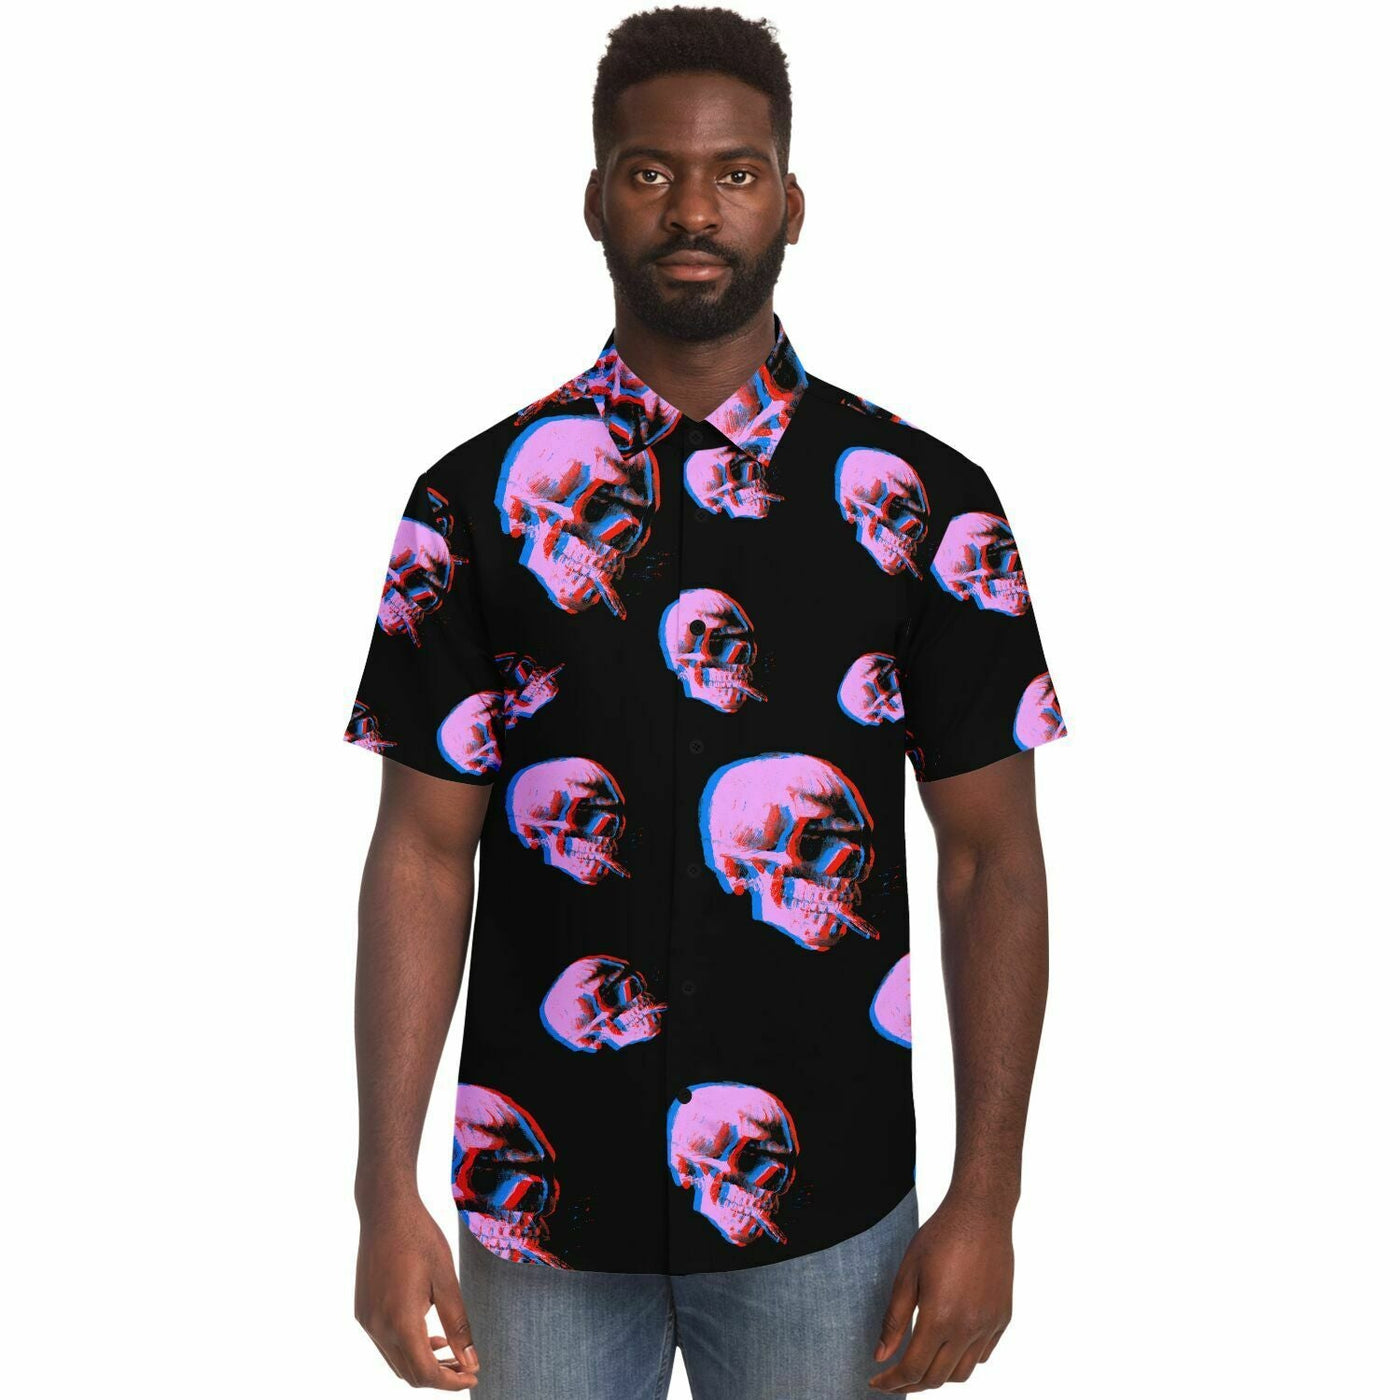 Skull With Burning Cigarette - Van Gogh Tribute | Art Freak Pop short Sleeves Shirt